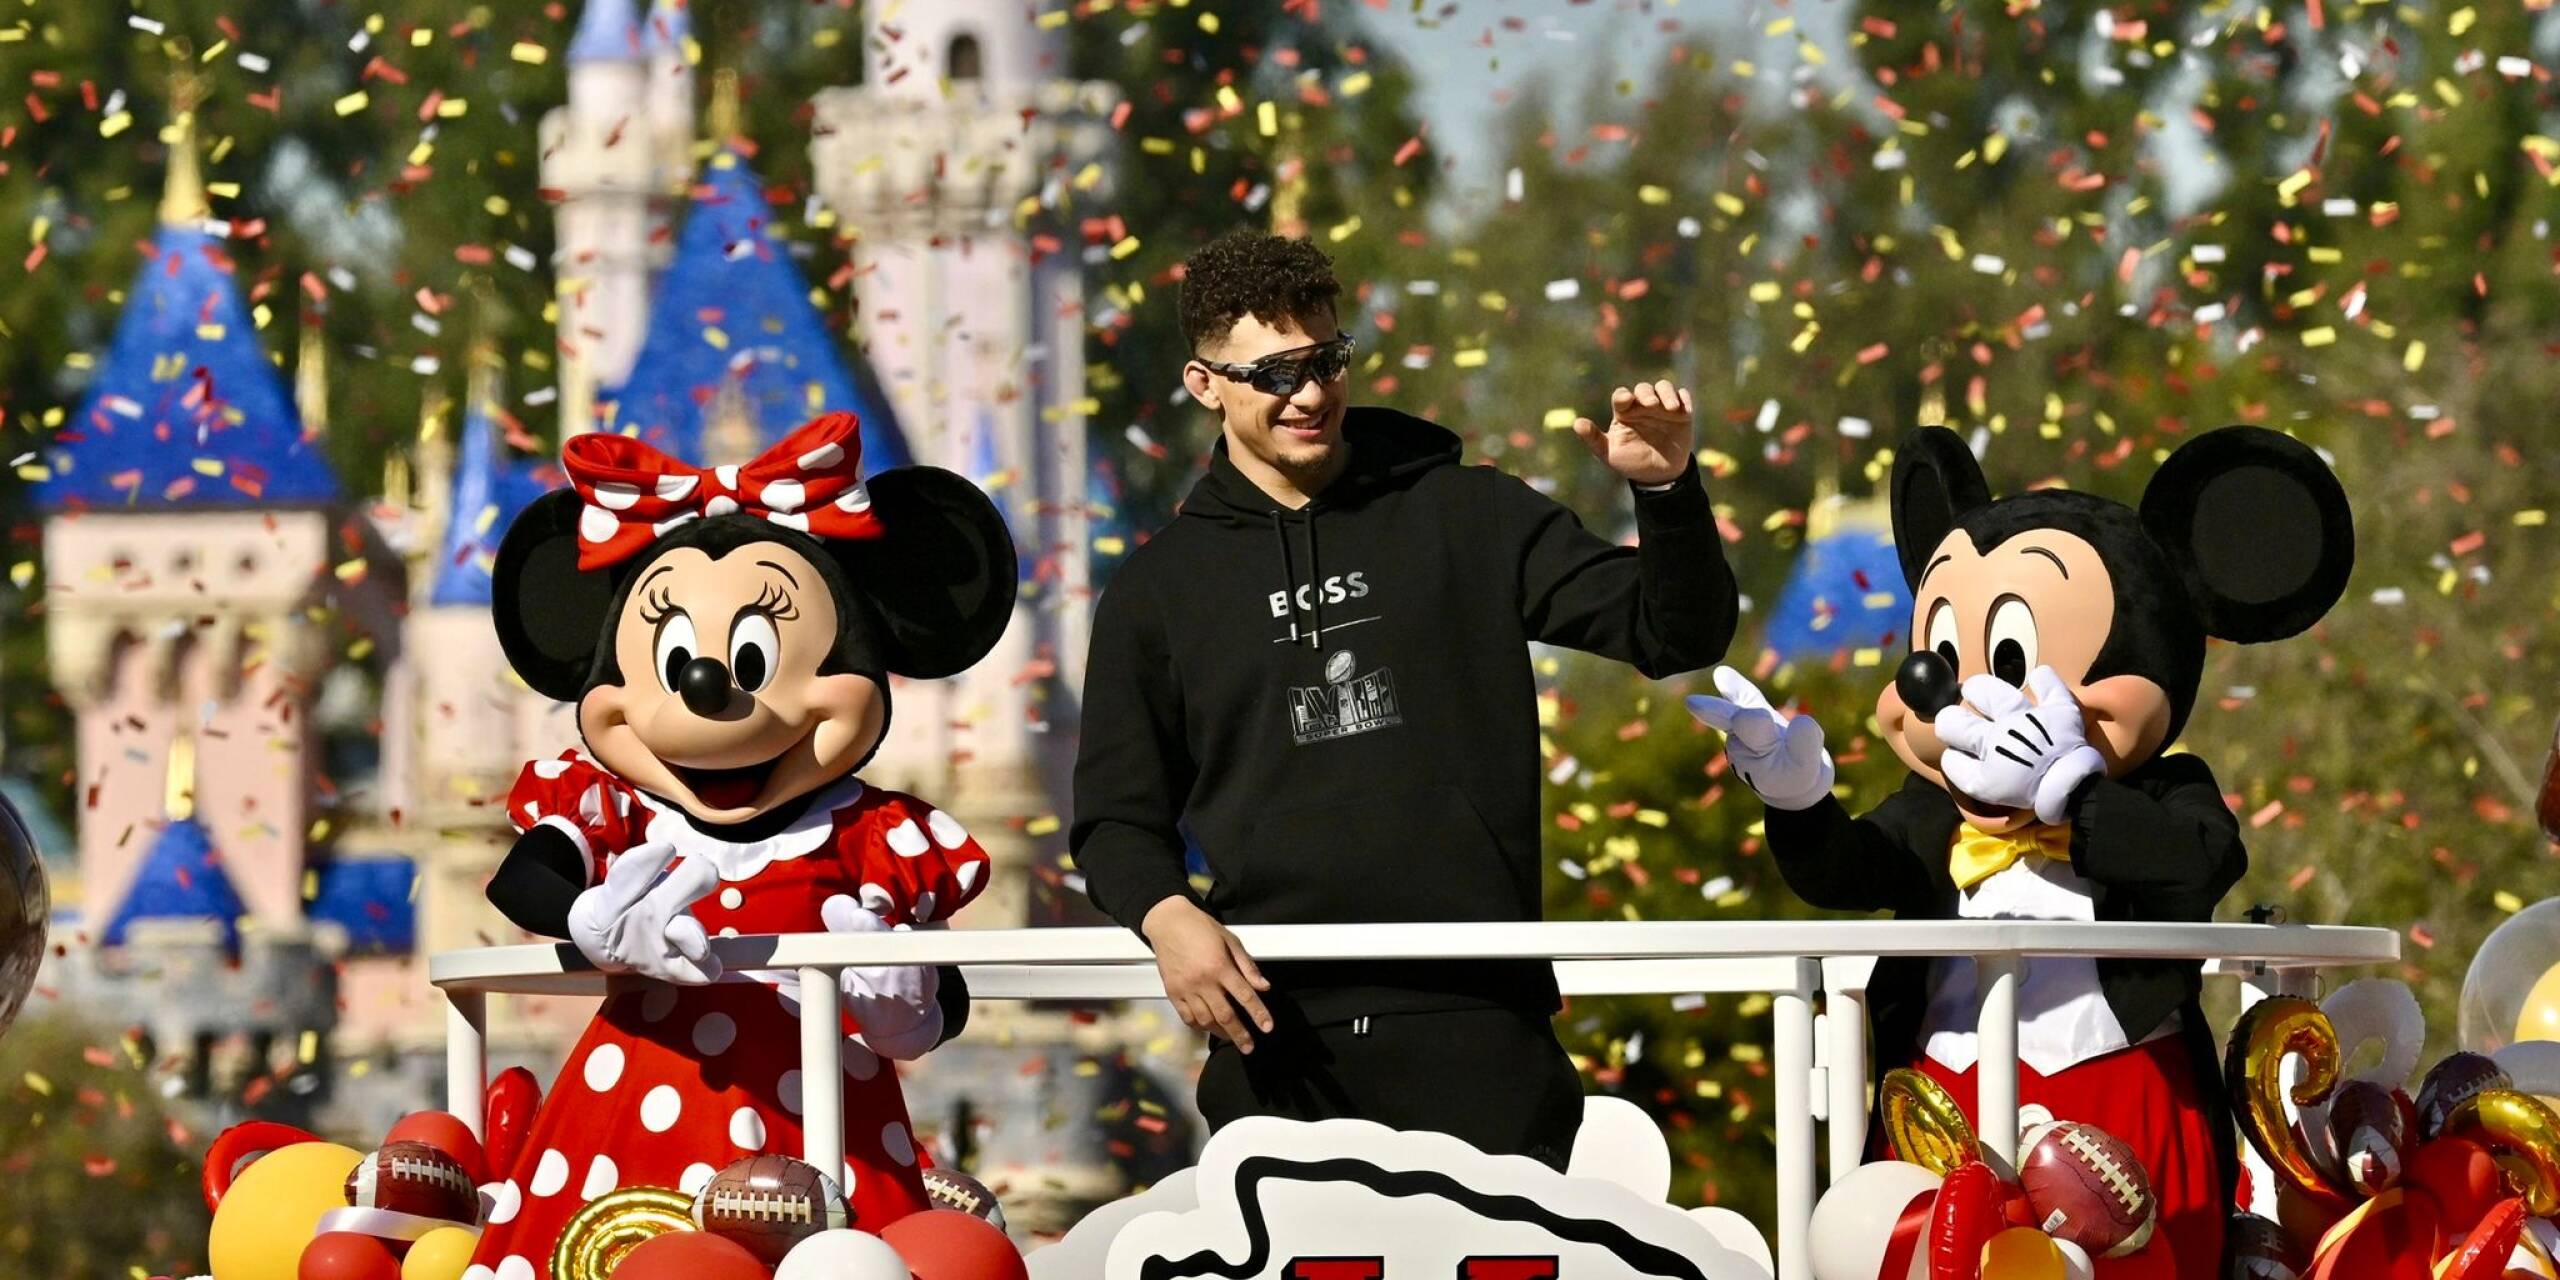 Patrick Mahomes von den Kansas City Chiefs feiert den Super-Bowl-Sieg in Disneyland im kalifornischen Anaheim. Dass in dem Freizeitpark gefeiert wird, hat Tradition. Schon 1987 soll ein jubelnder Spieler gerufen haben: «Ich fahr ins Disneyland!» - als Teil einer Werbekampagne.